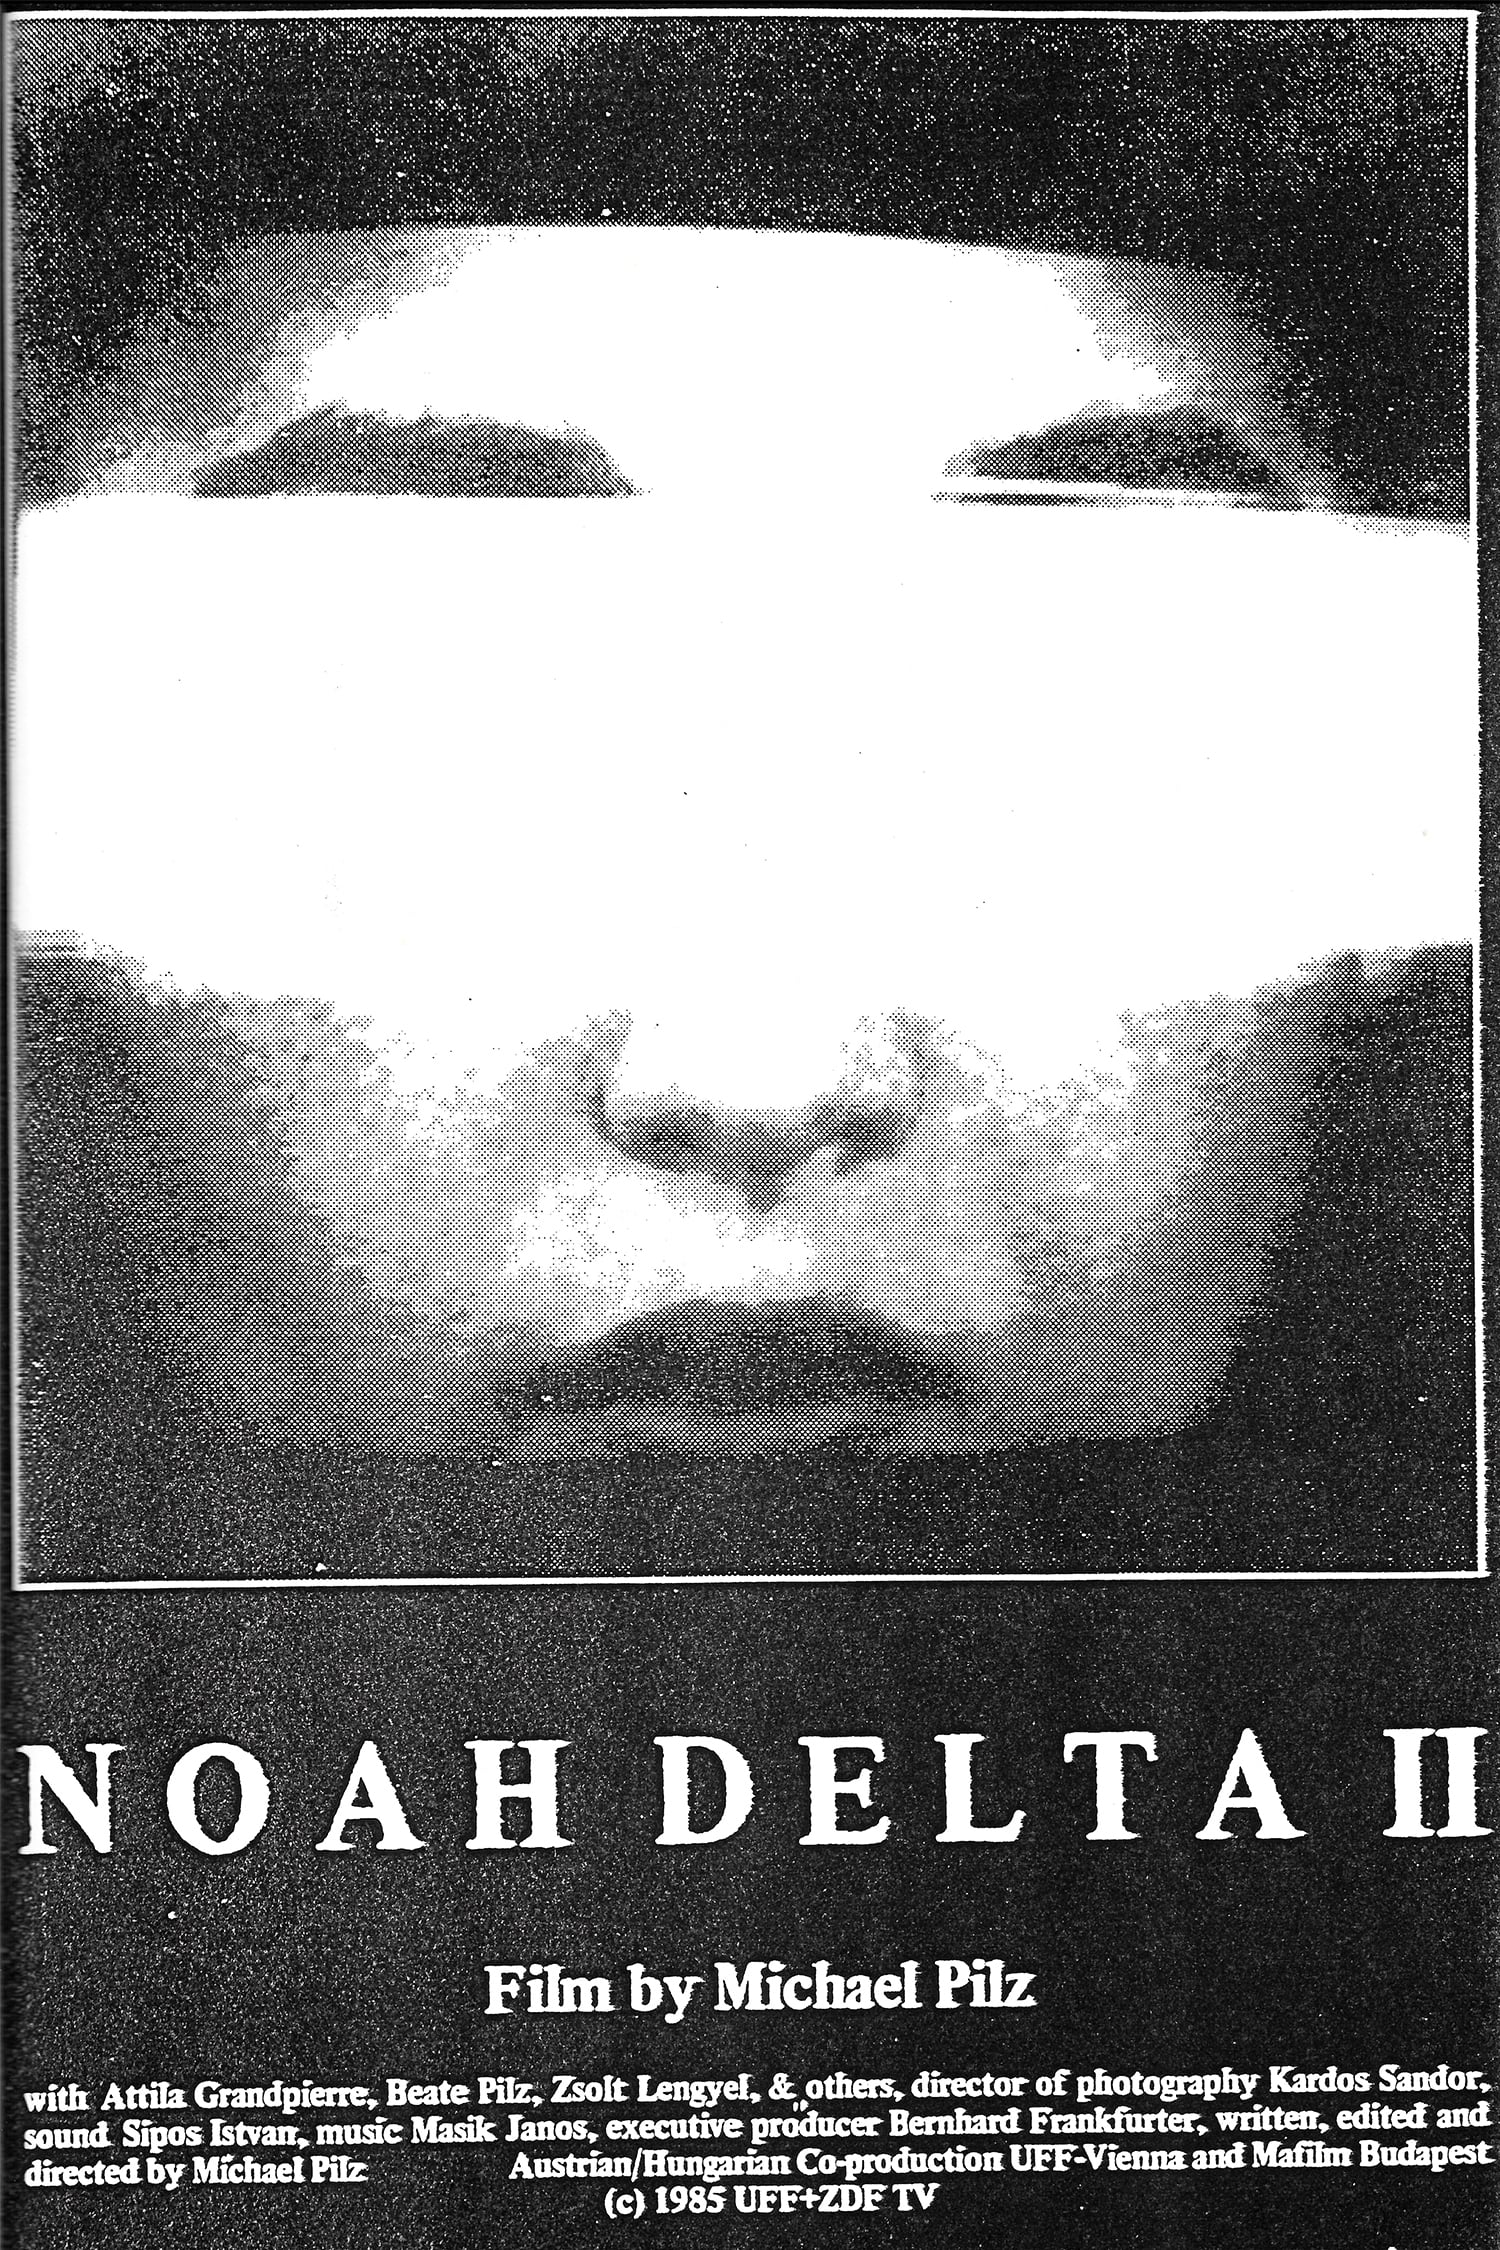 Noah Delta II